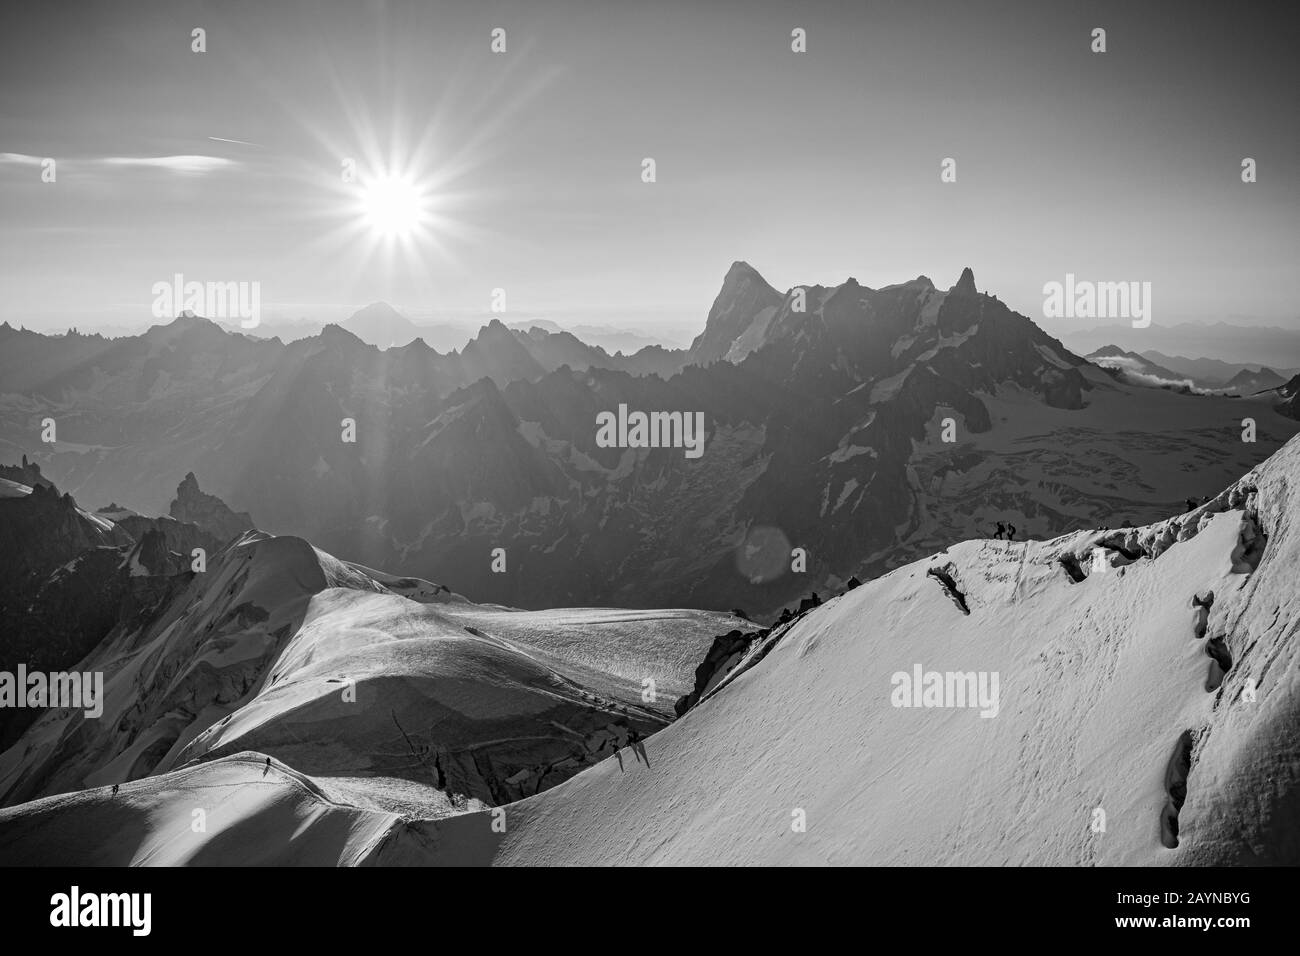 Una vista in bianco e nero del paesaggio degli escursionisti salendo sul Monte Bianco in una mattina soleggiata dalla stazione Aiguille du midi, Chamonix, Francia Foto Stock